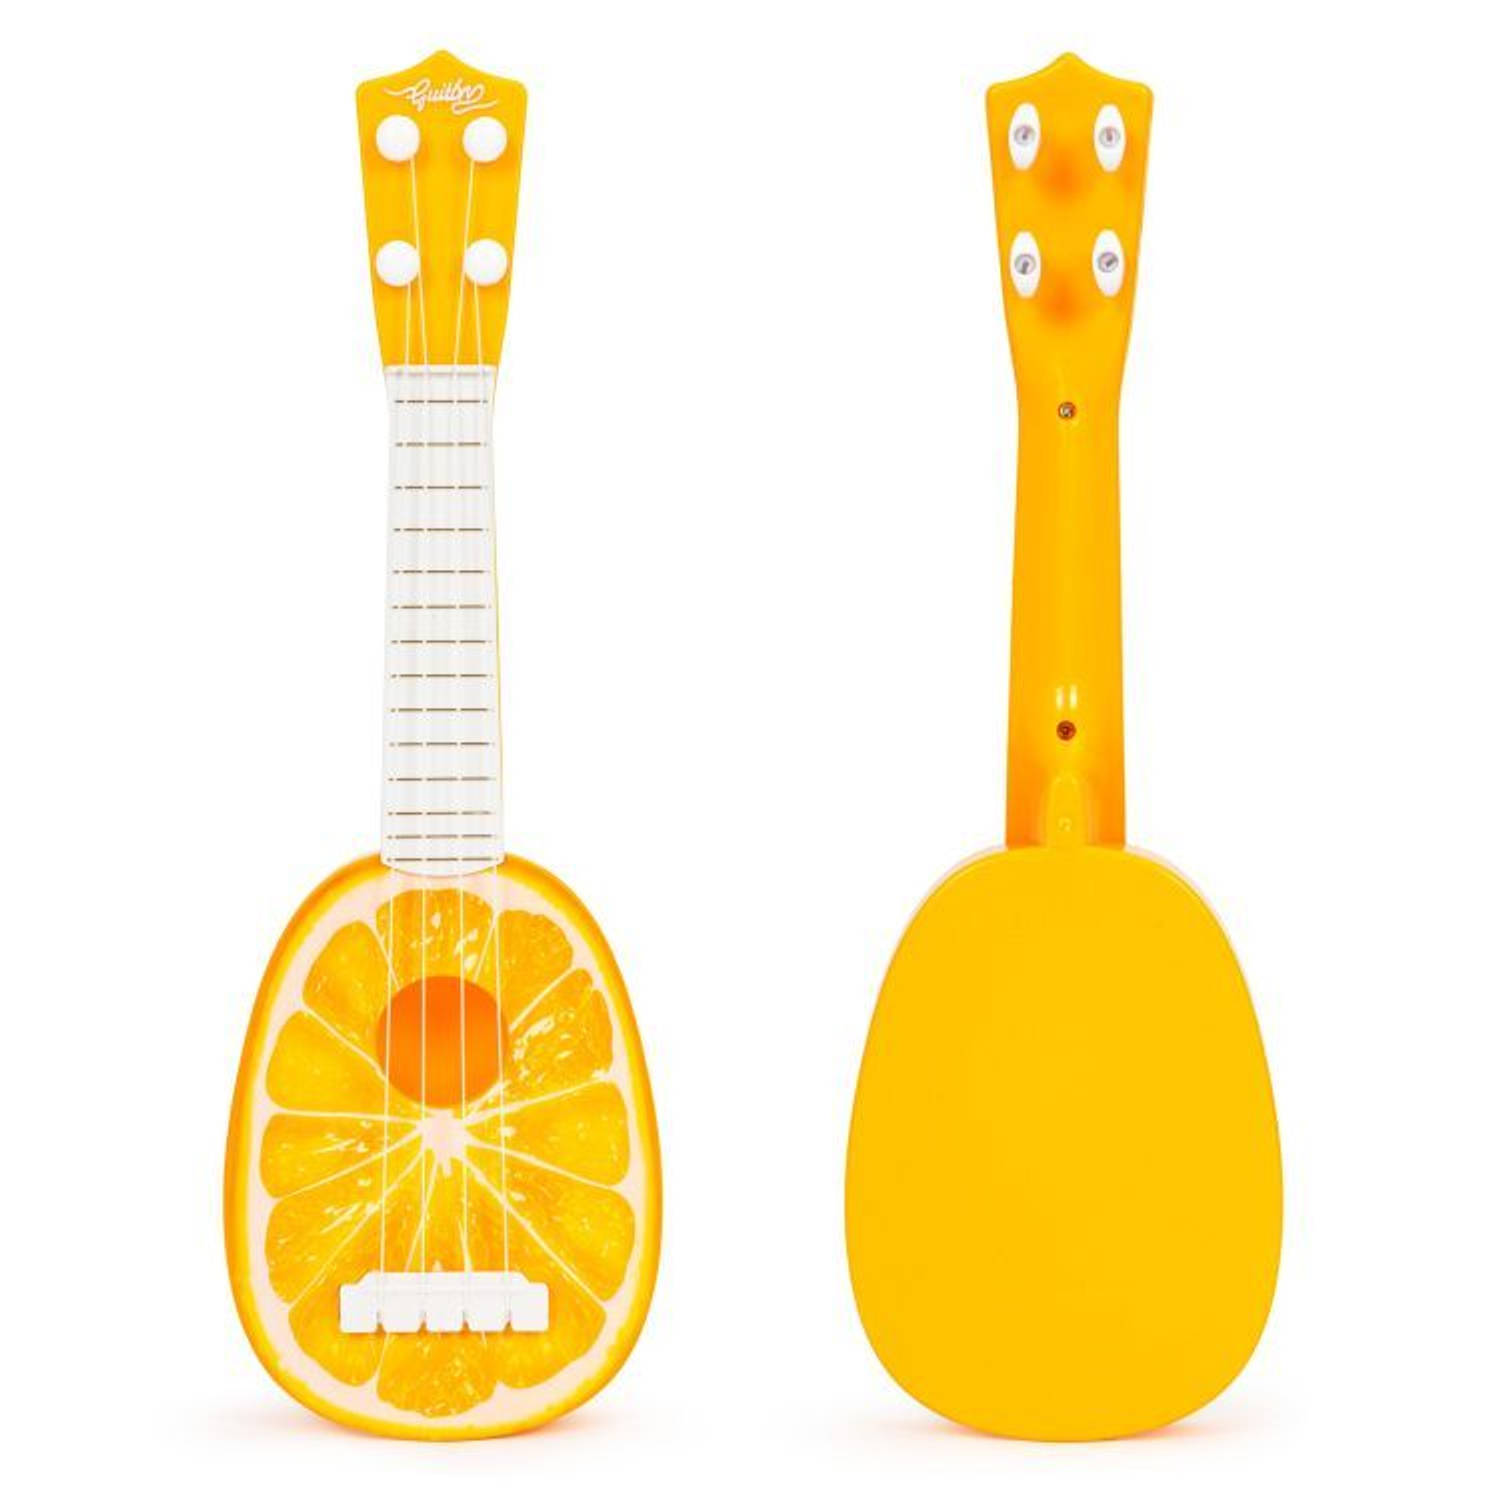 Ecotoys mini kunststof kinder ukelele-gitaar sinaasappel met 4 snaren 36 x 11.5 x 3.5 cm oranje